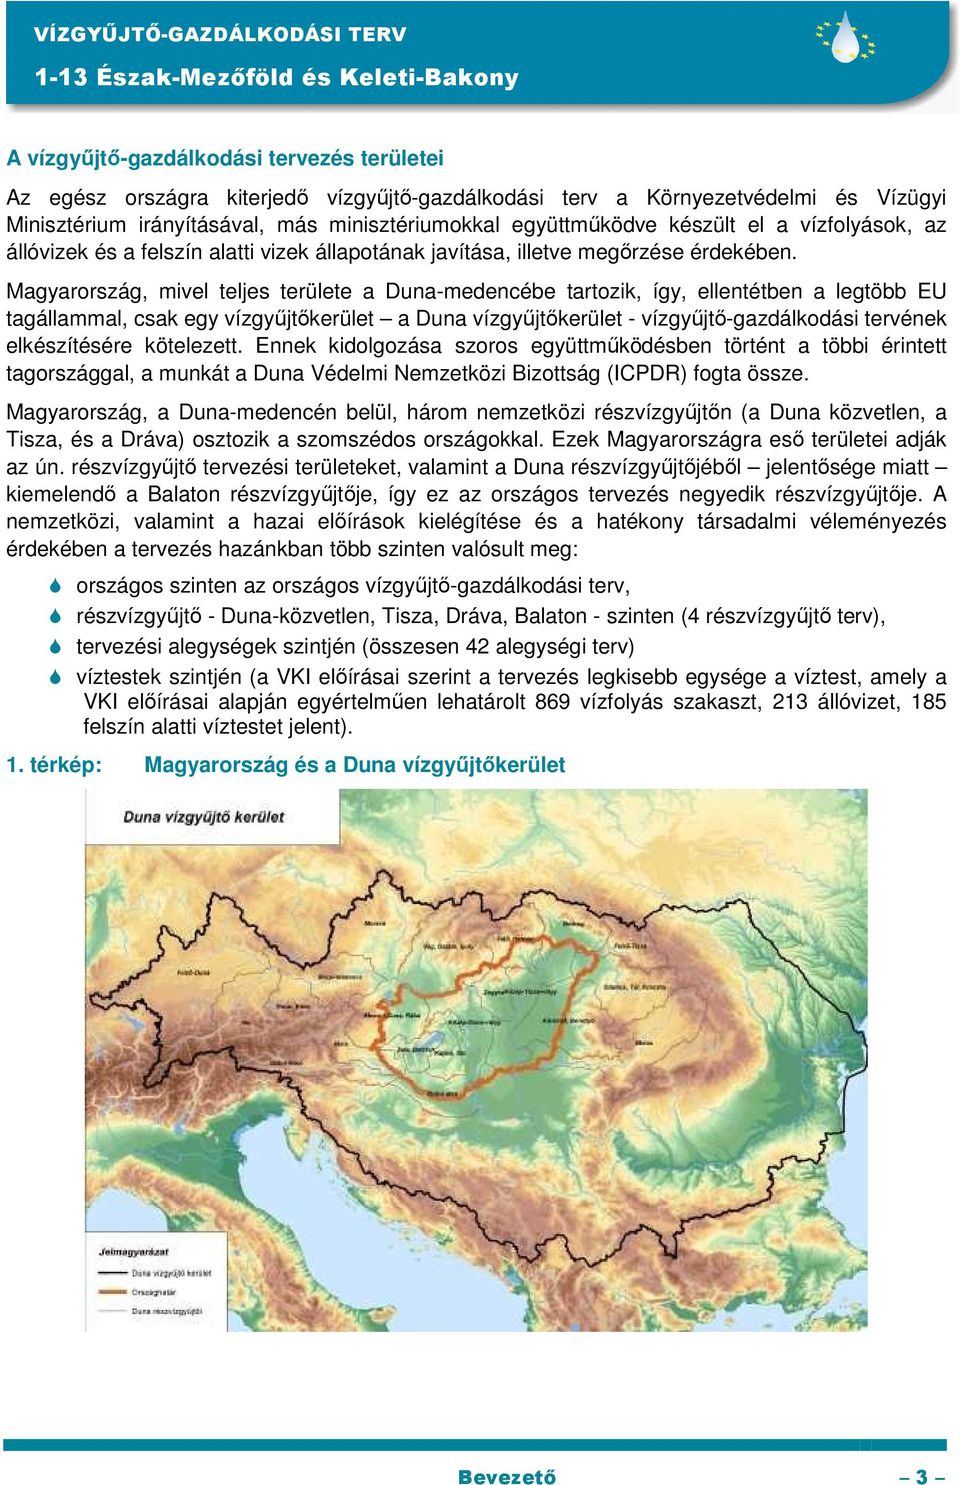 Magyarország, mivel teljes területe a Duna-medencébe tartozik, így, ellentétben a legtöbb EU tagállammal, csak egy vízgyőjtıkerület a Duna vízgyőjtıkerület - vízgyőjtı-gazdálkodási tervének